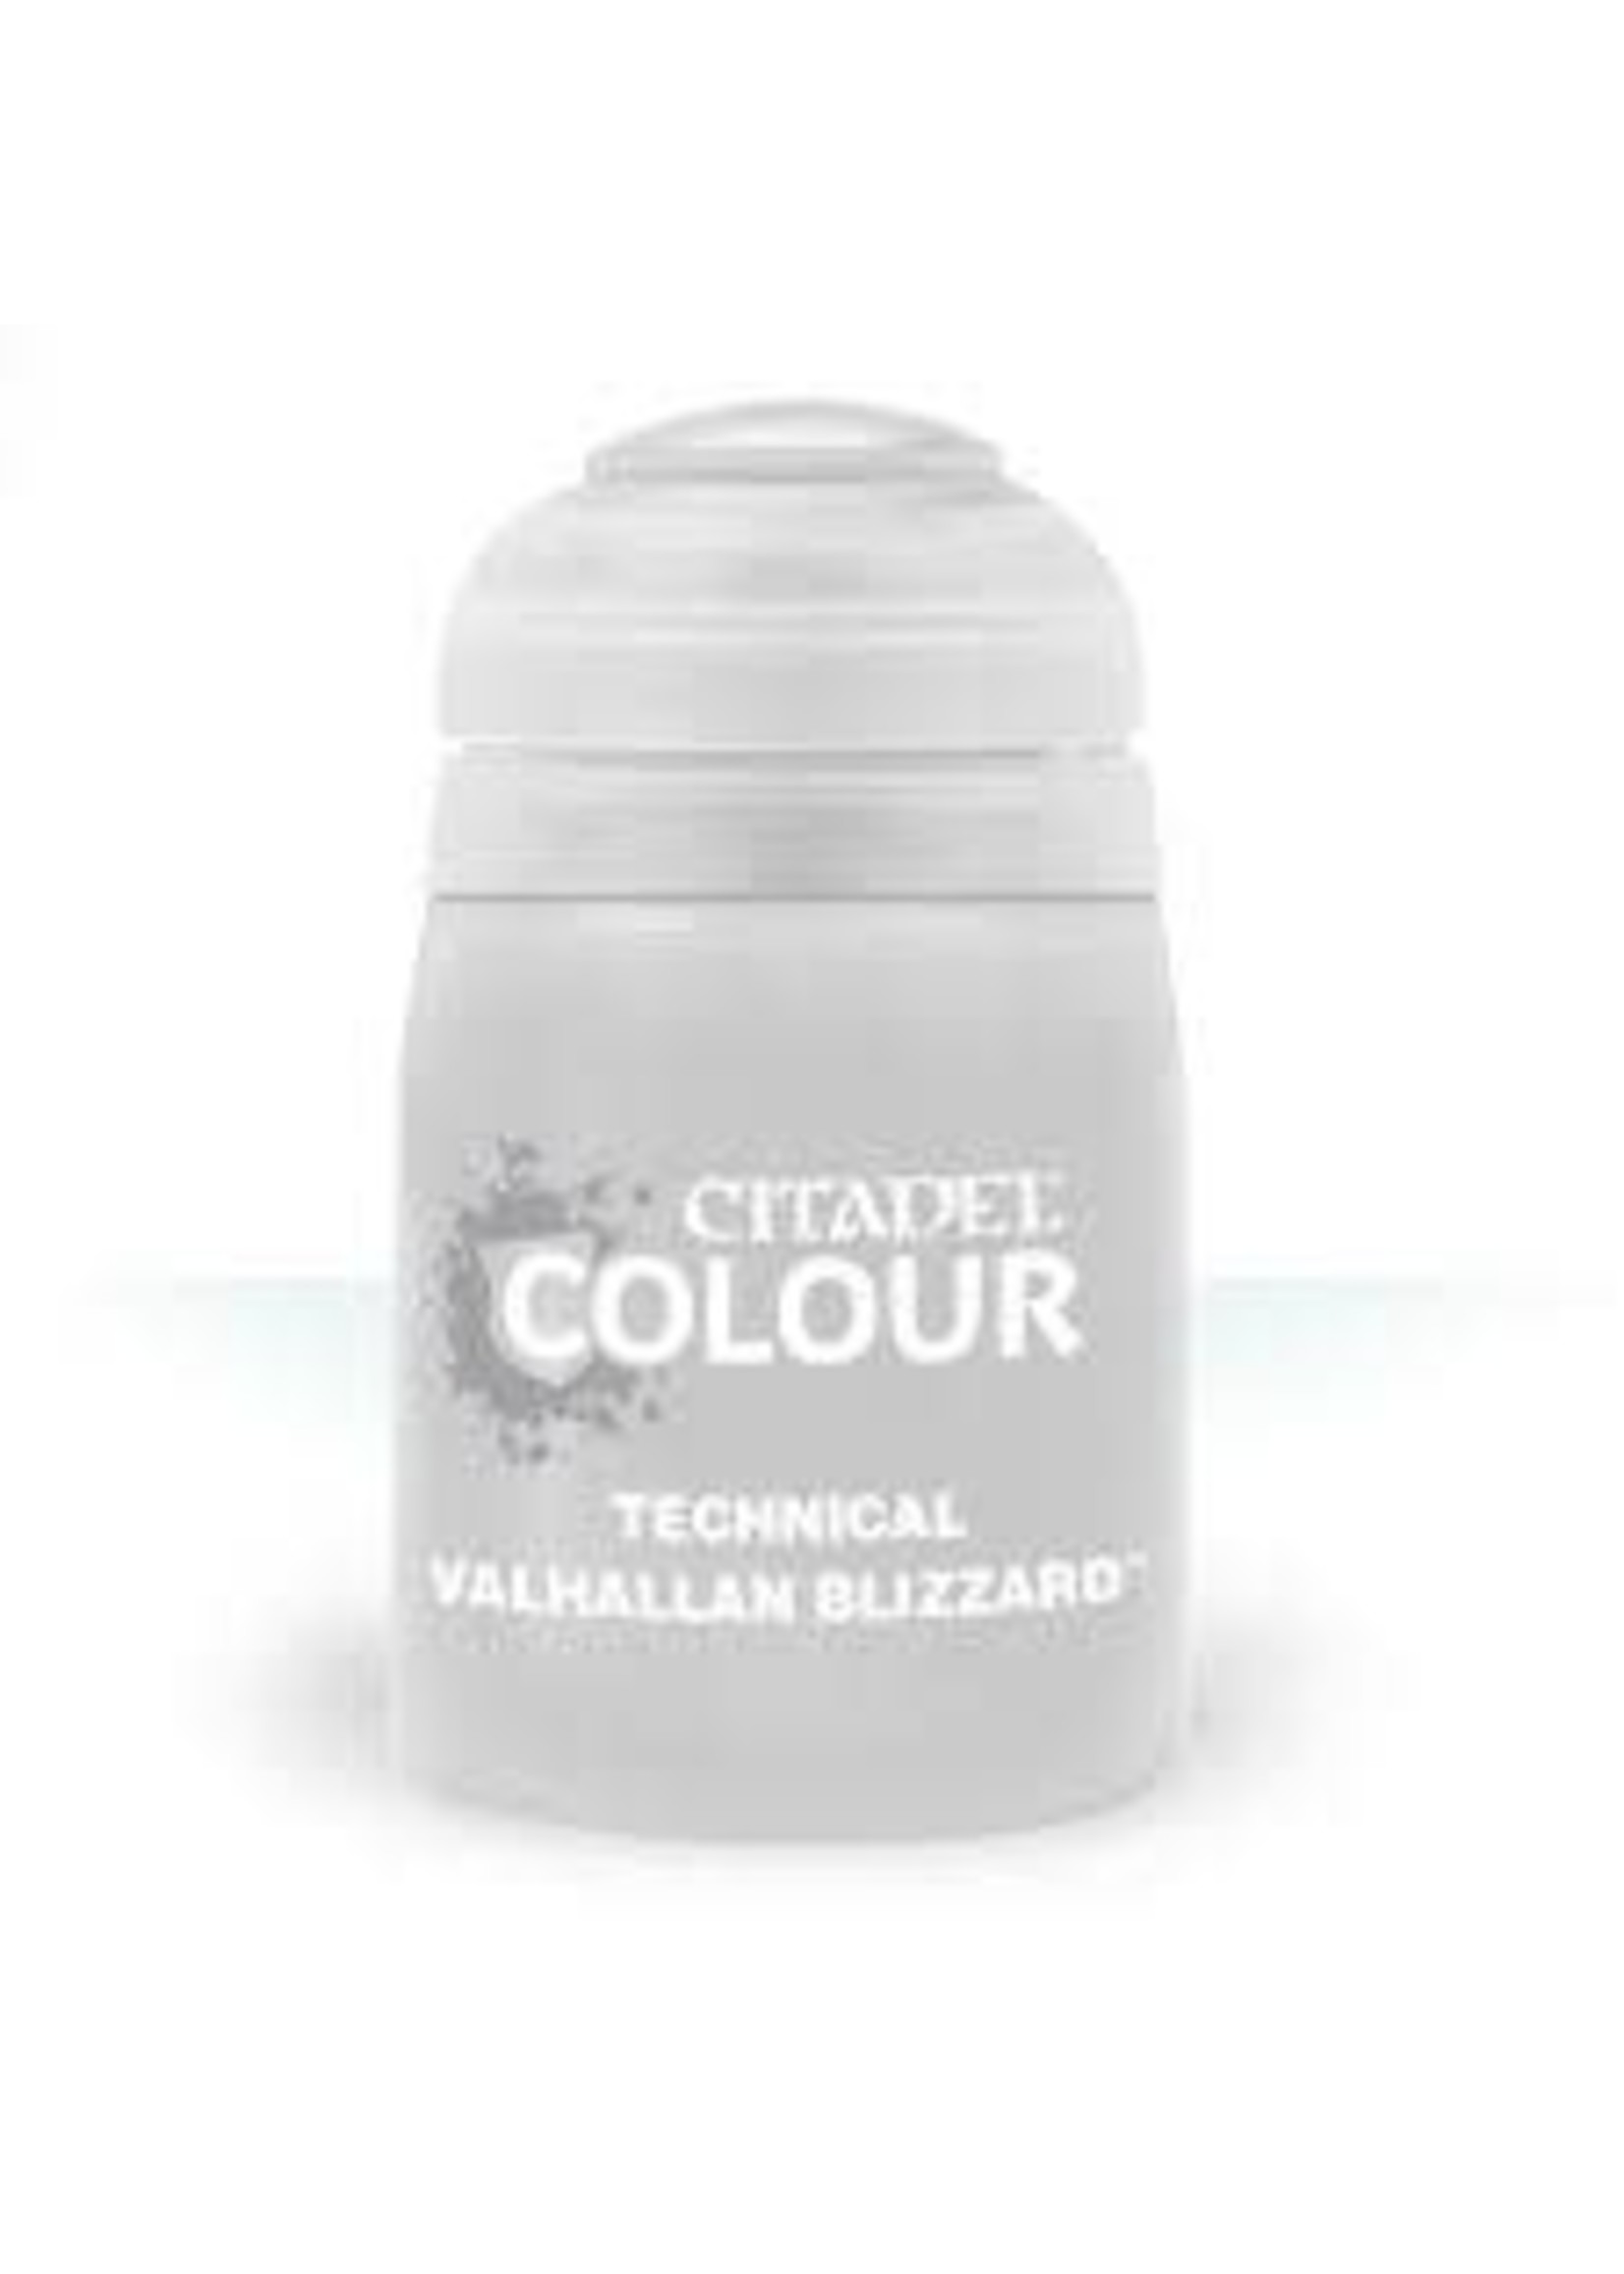 Citadel Valhallan Blizzard 24 mL